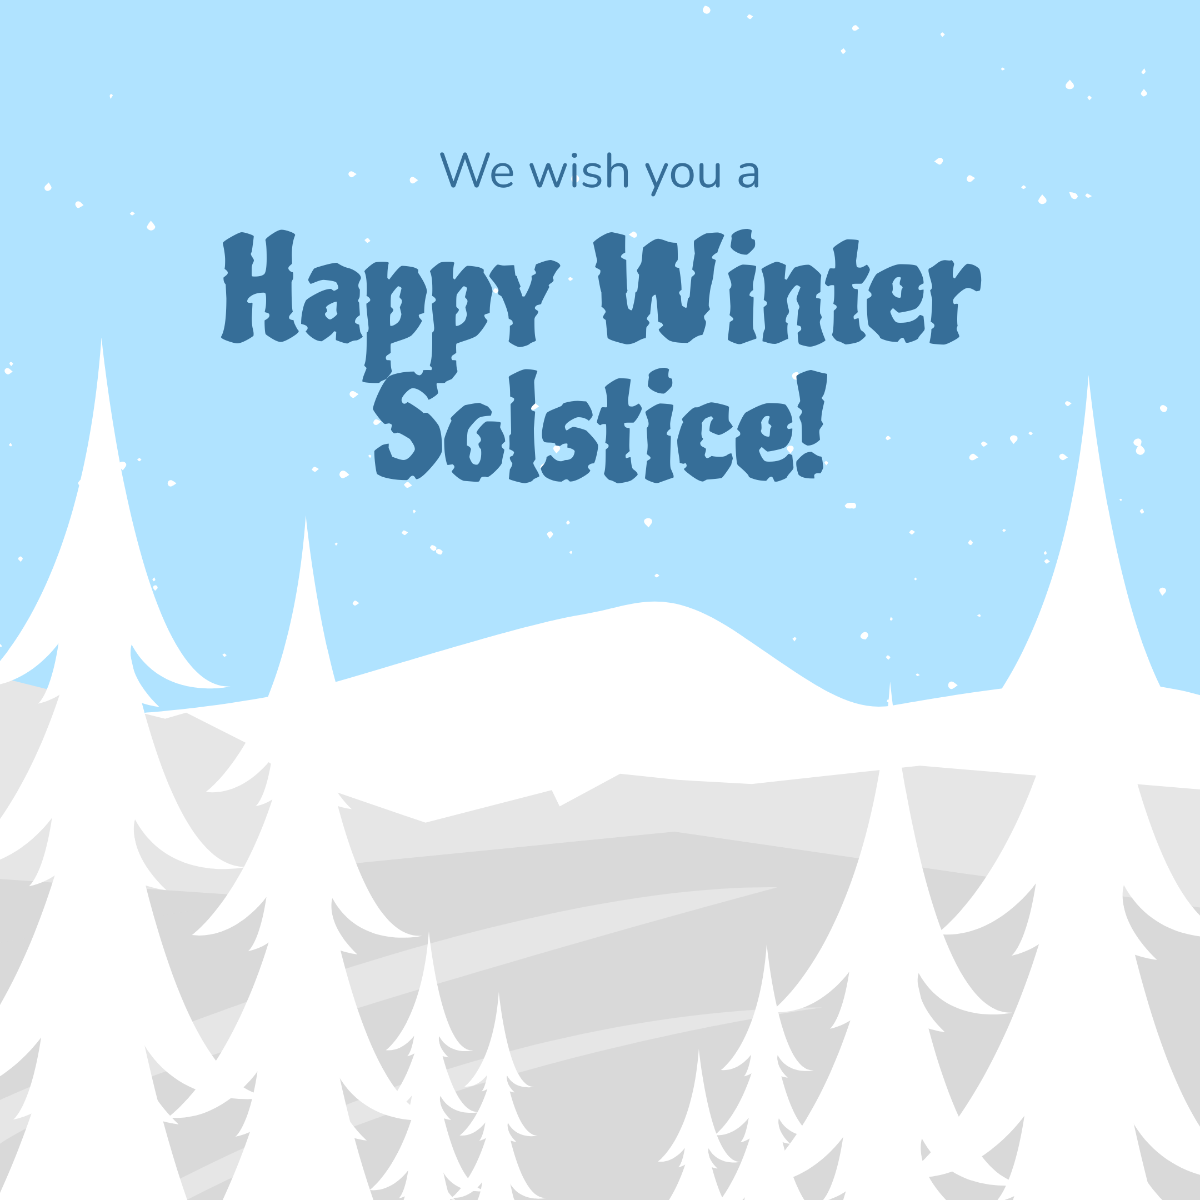 Happy Winter Solstice Instagram Post